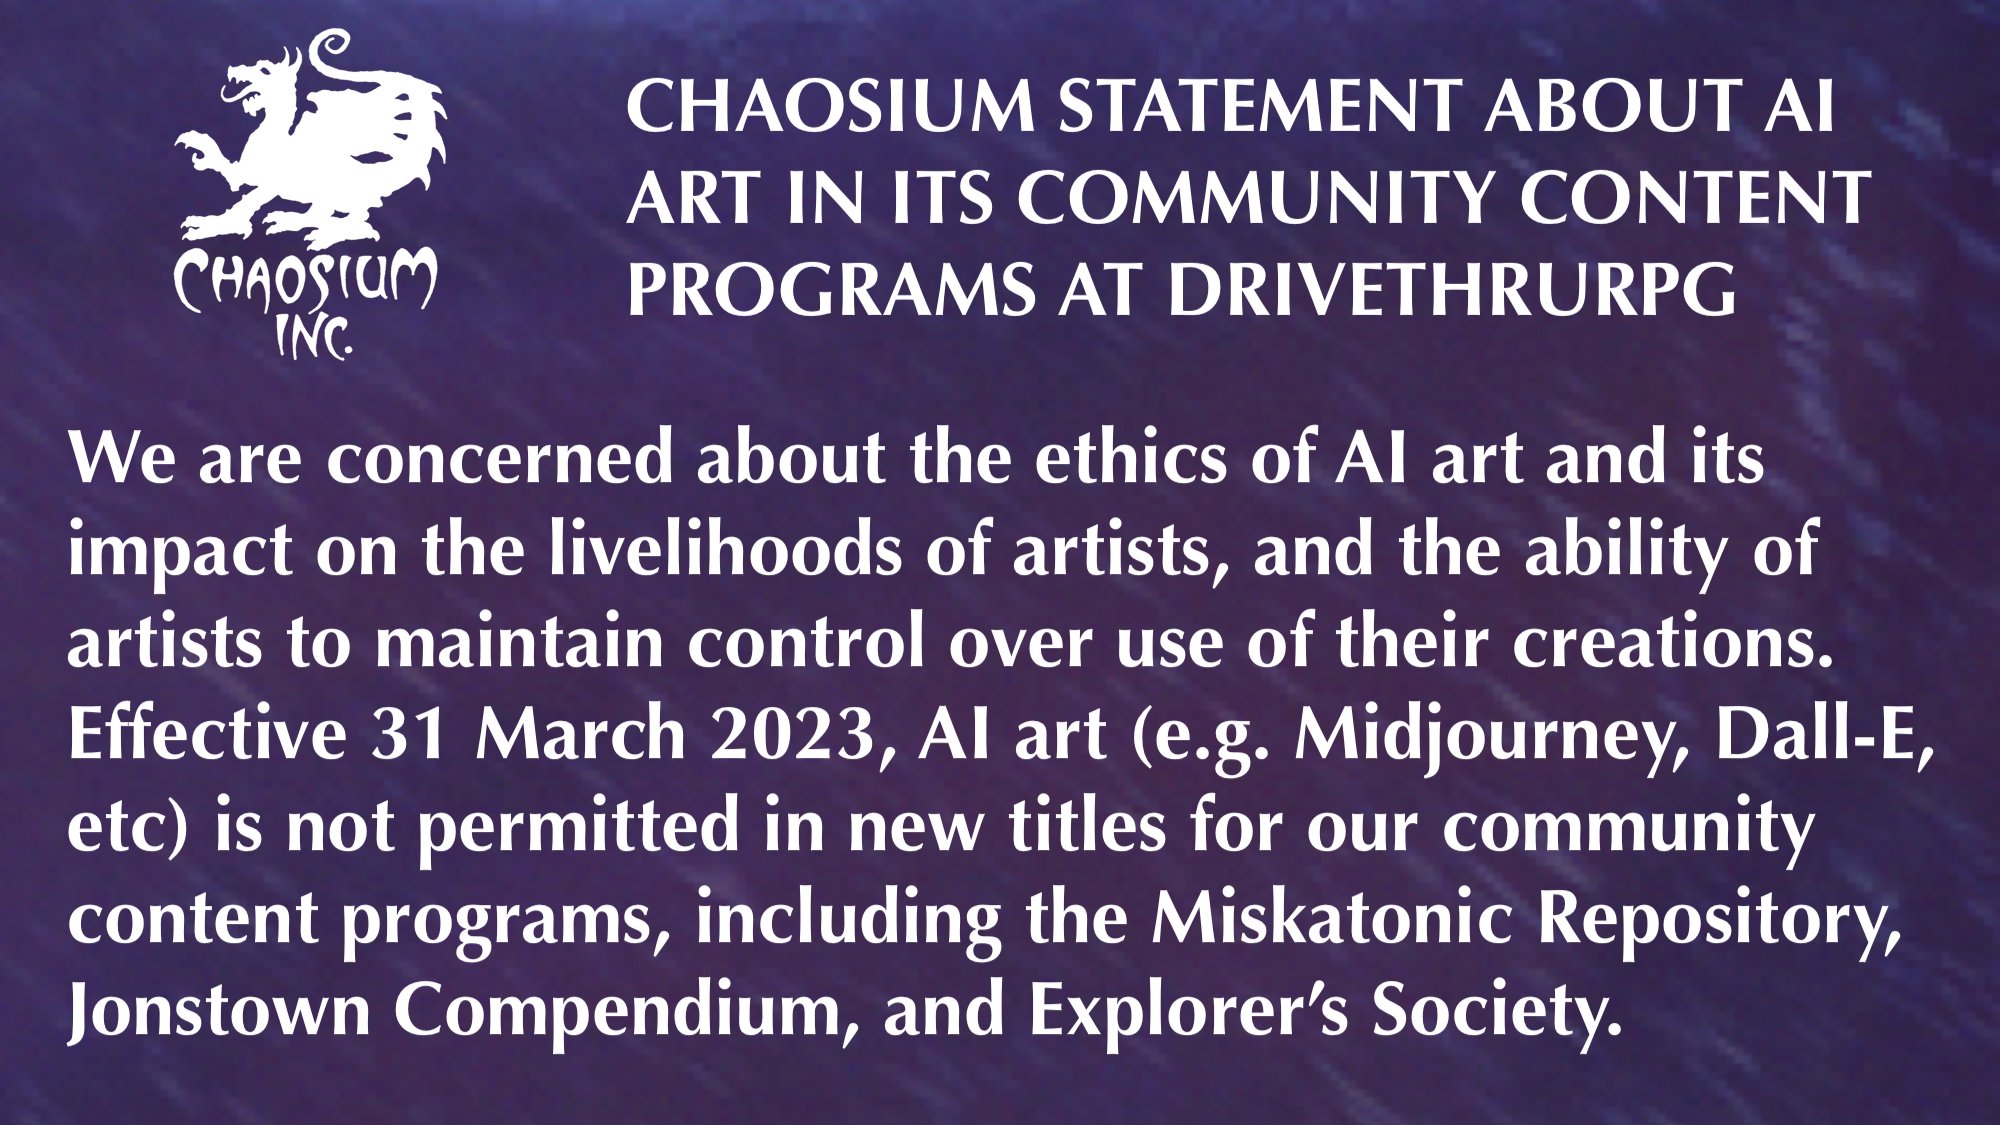 Chaosium Statement About AI Art